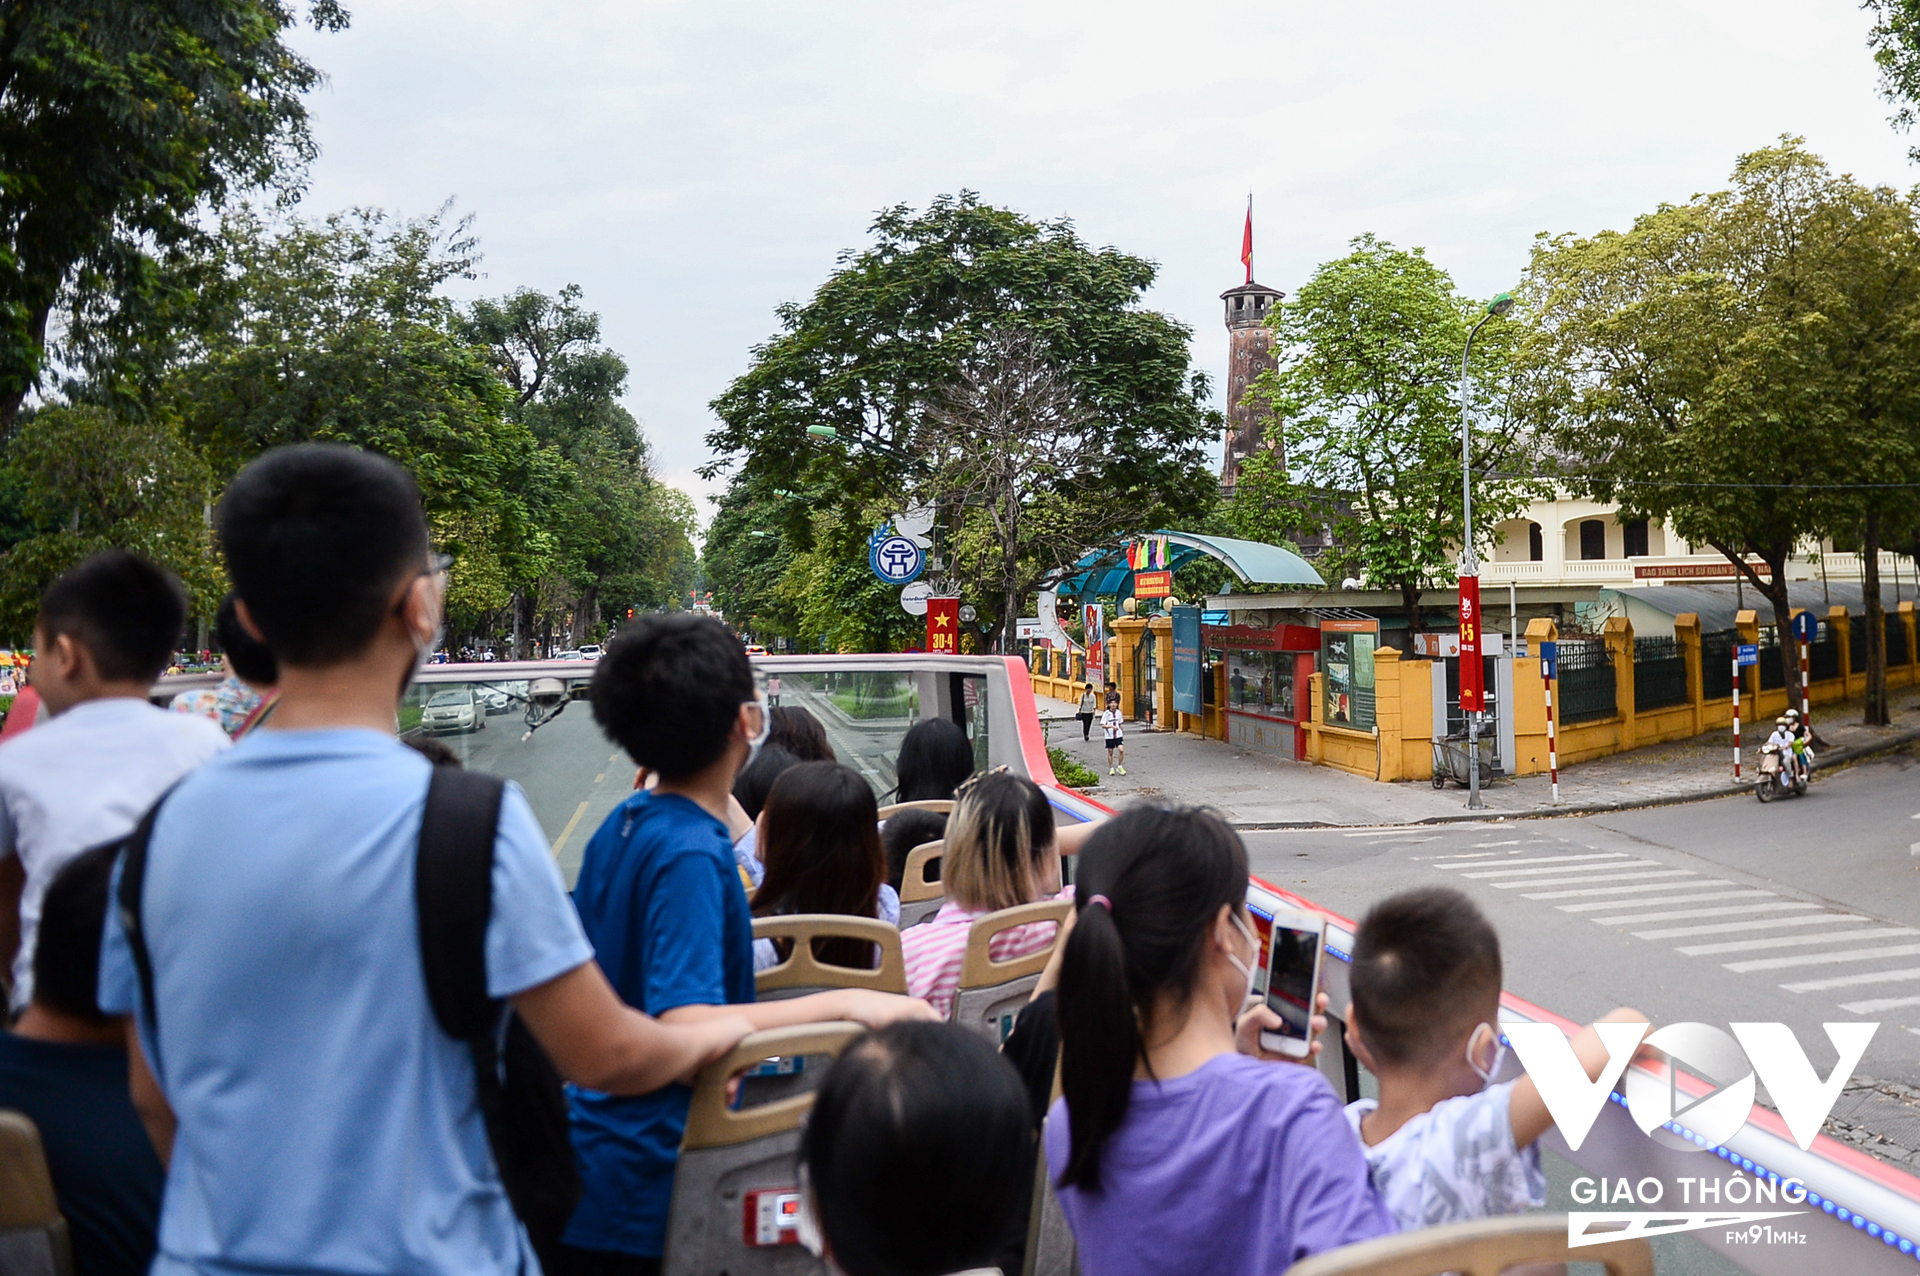 Tiếp đến xe buýt đưa người dân, du khách đi qua Bảo tàng Lịch sử quân sự Việt Nam; cột cờ Hà Nội. Đối với nhiều du khách đây là lần đầu tiên được nhìn thấy cột cờ Hà Nội.